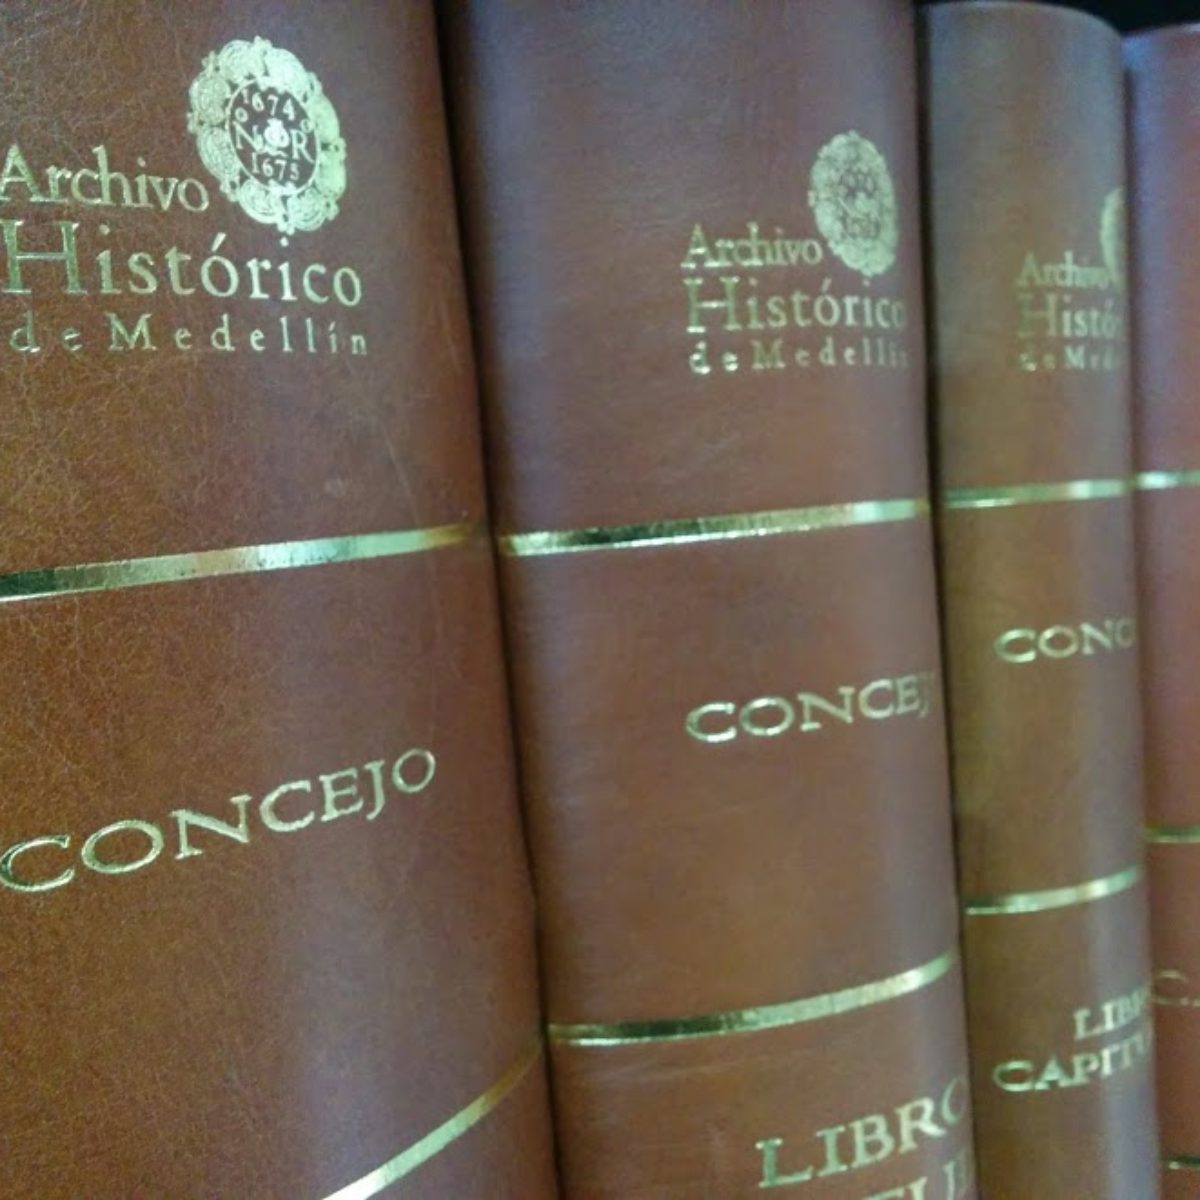 Fondos documentales del Archivo Histórico de Medellín